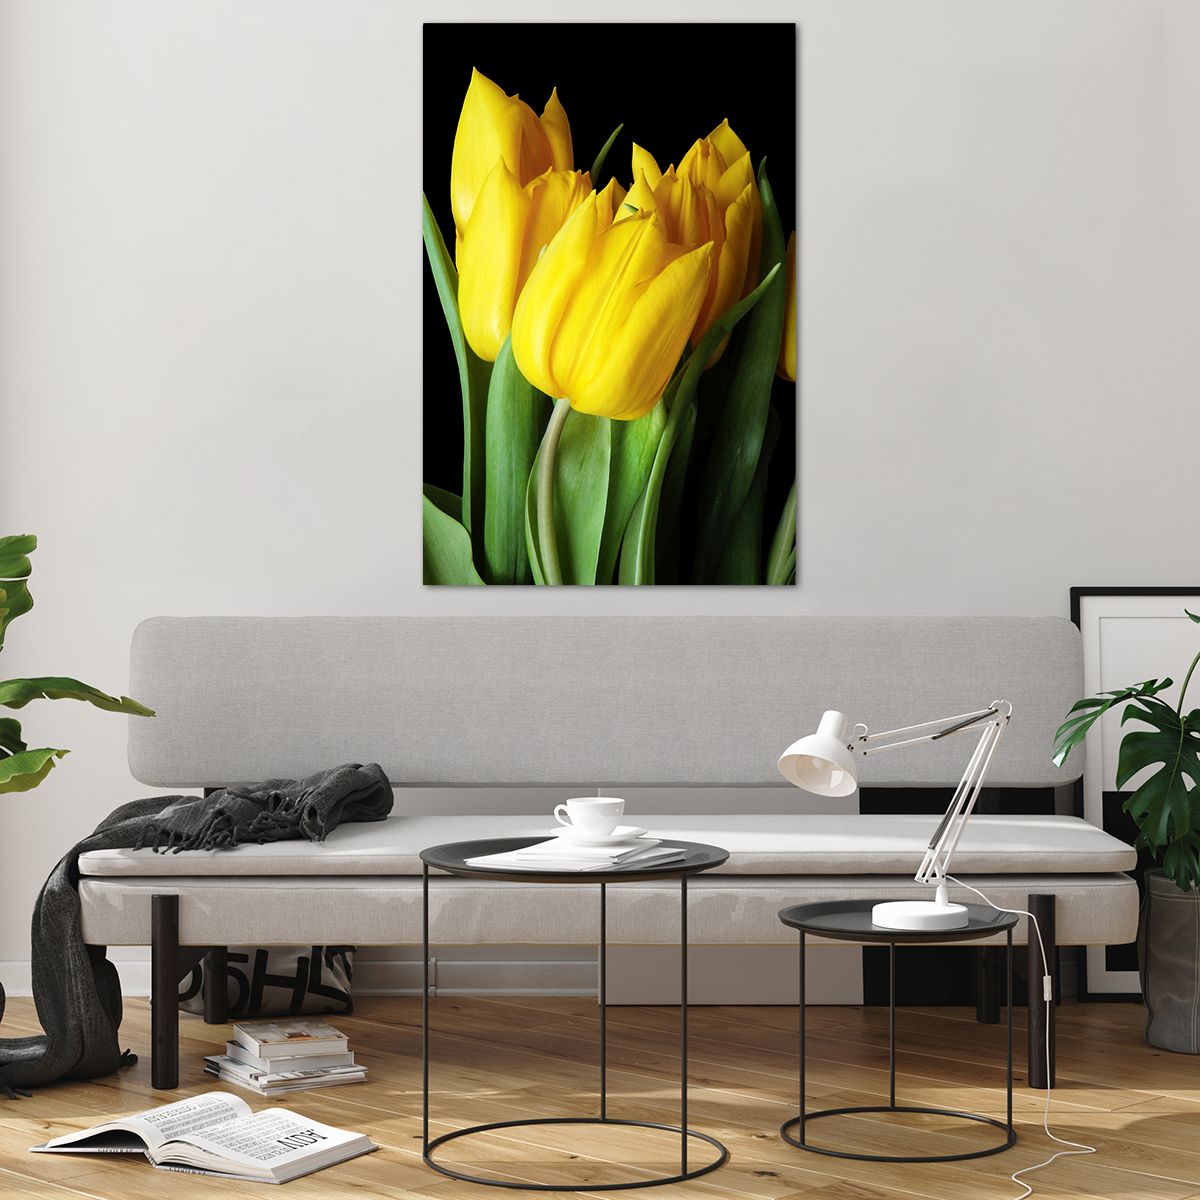 Bilder auf glas Blumen, Bilder auf glas Tulpen, Bilder auf glas Blumenstrauß, Bilder auf glas Gelbe Tulpen, Bilder auf glas Floristen